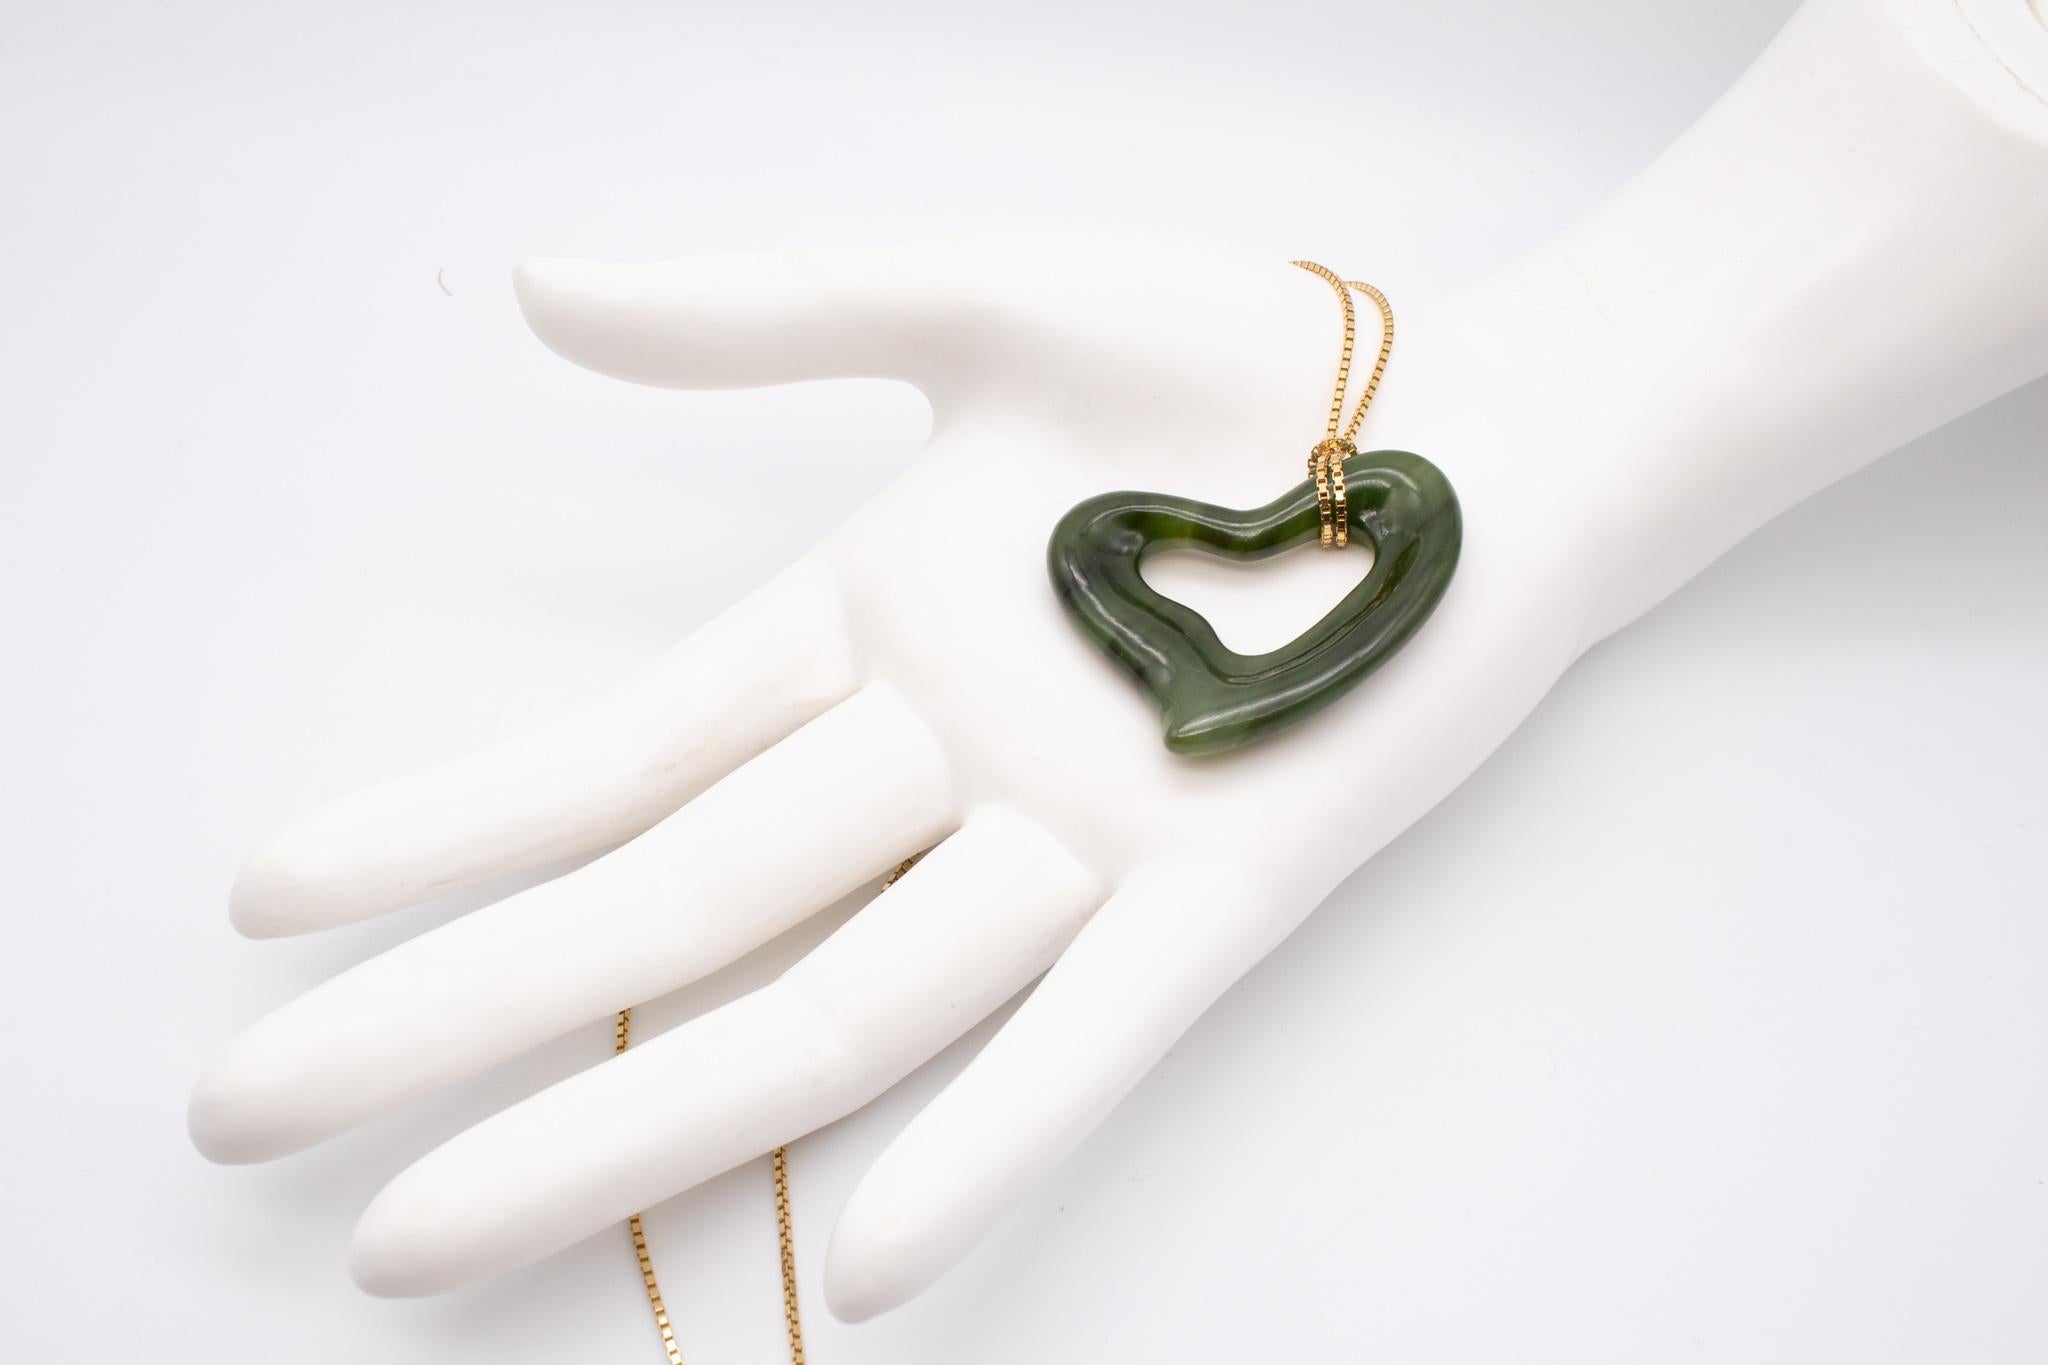 Rare collier à cœur en néphrite par Elsa Peretti (1940-2021) pour Tiffany & Co. 

Une pièce vintage inhabituelle conçue par Elsa Peretti, dans les années 1970. Il a été créé aux Tiffany Studios de New York et conçu comme un collier pendentif en